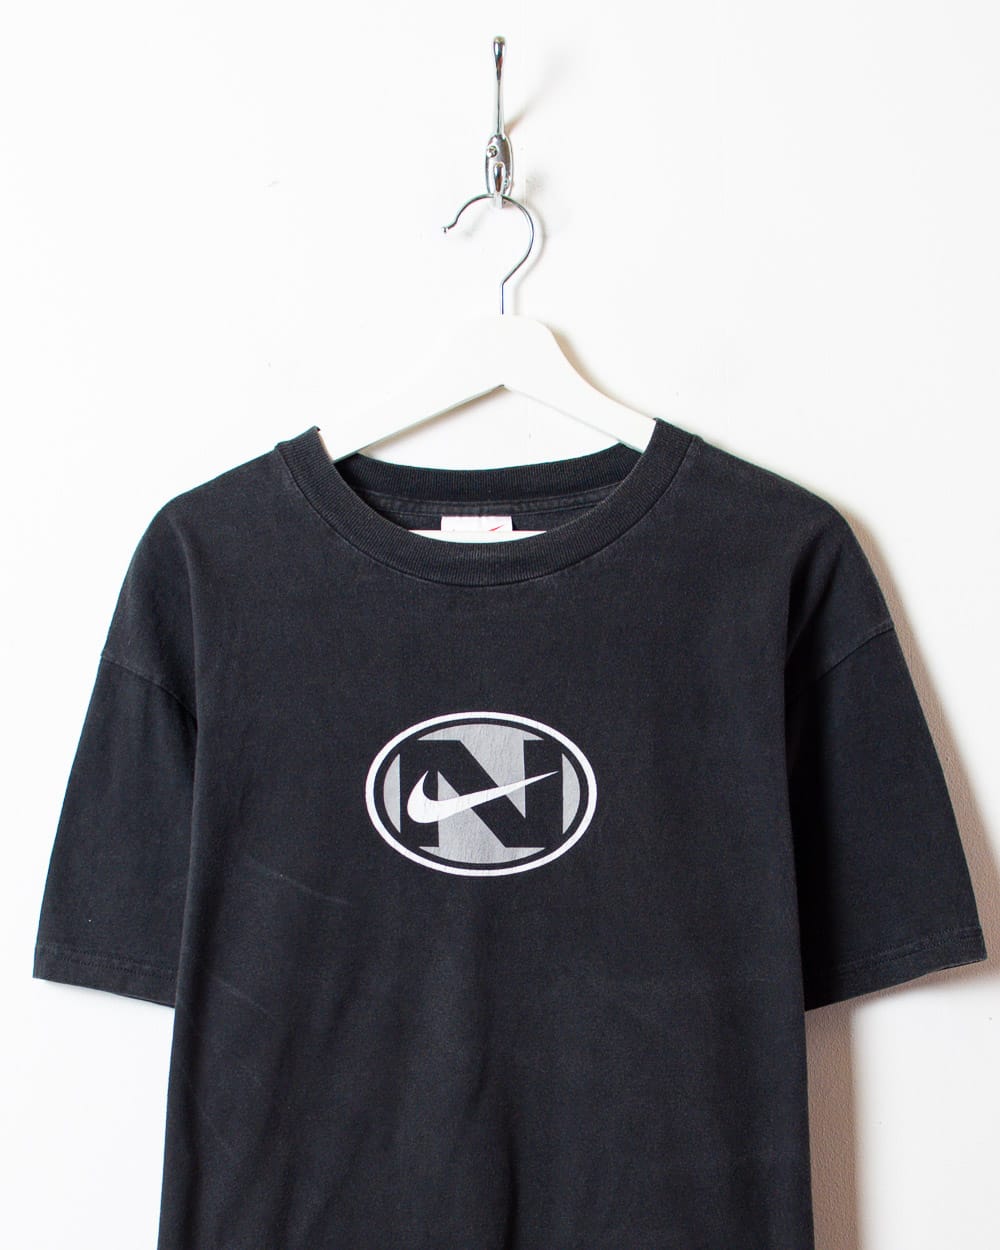 Black Nike T-Shirt - Large